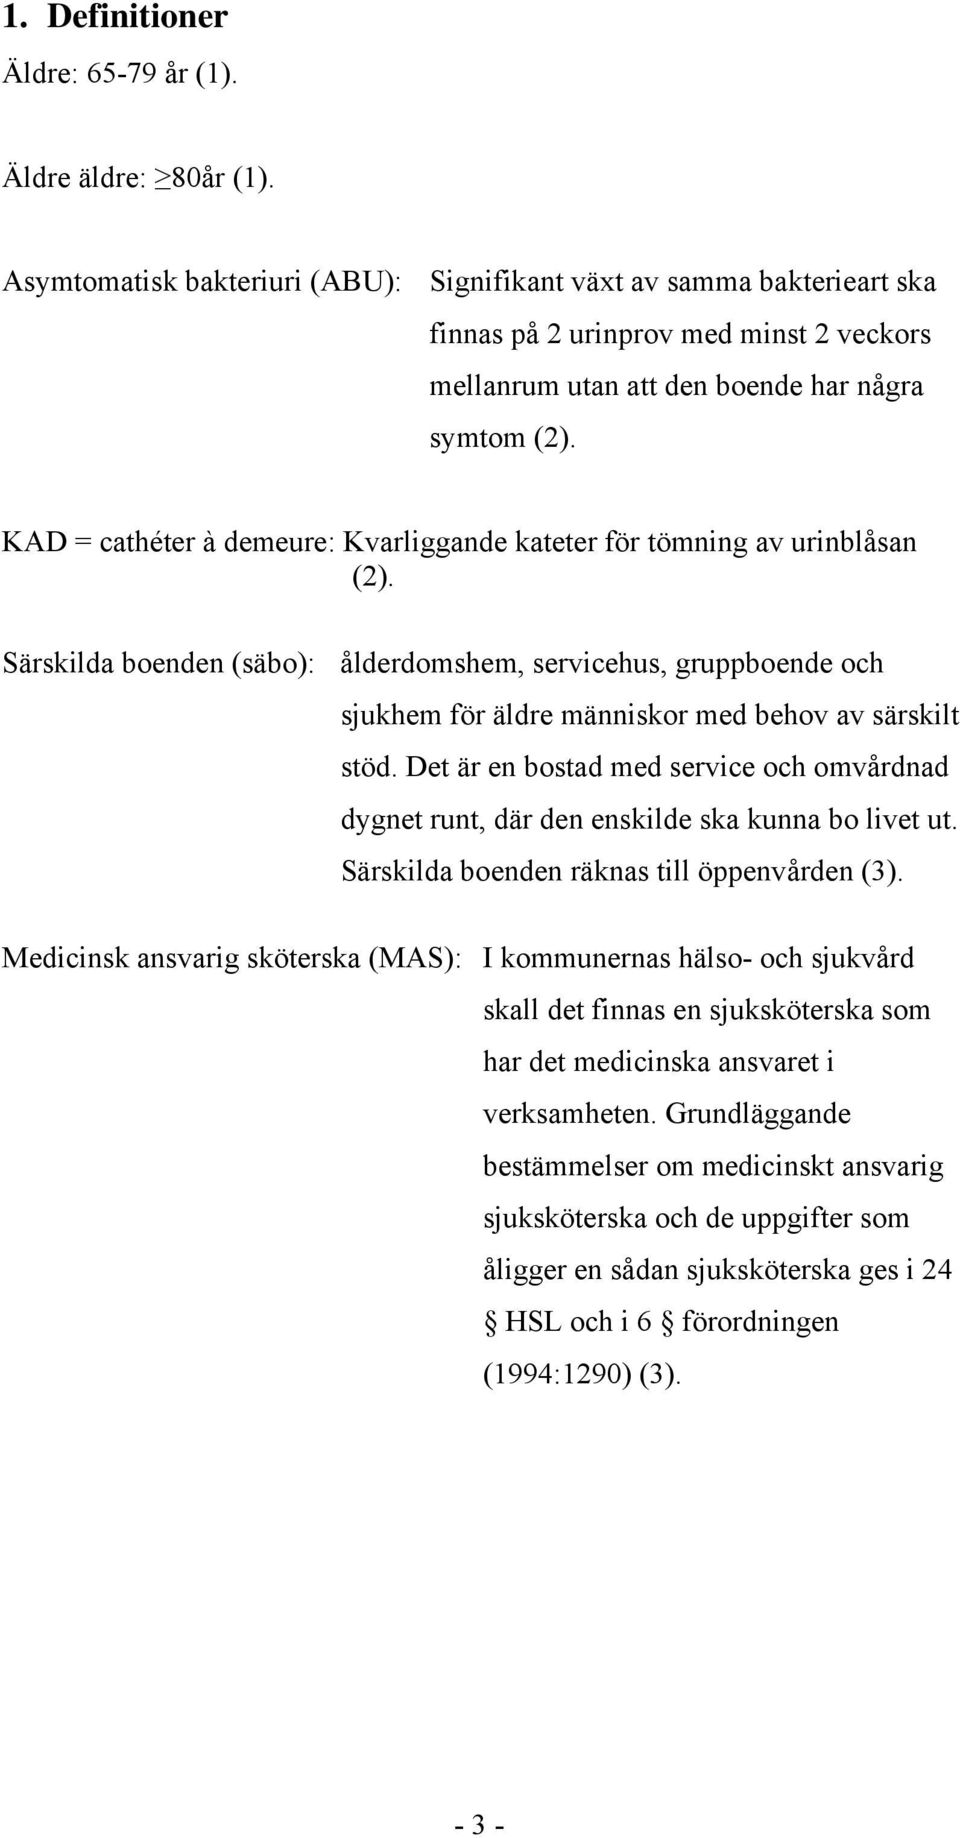 KAD = cathéter à demeure: Kvarliggande kateter för tömning av urinblåsan (2).